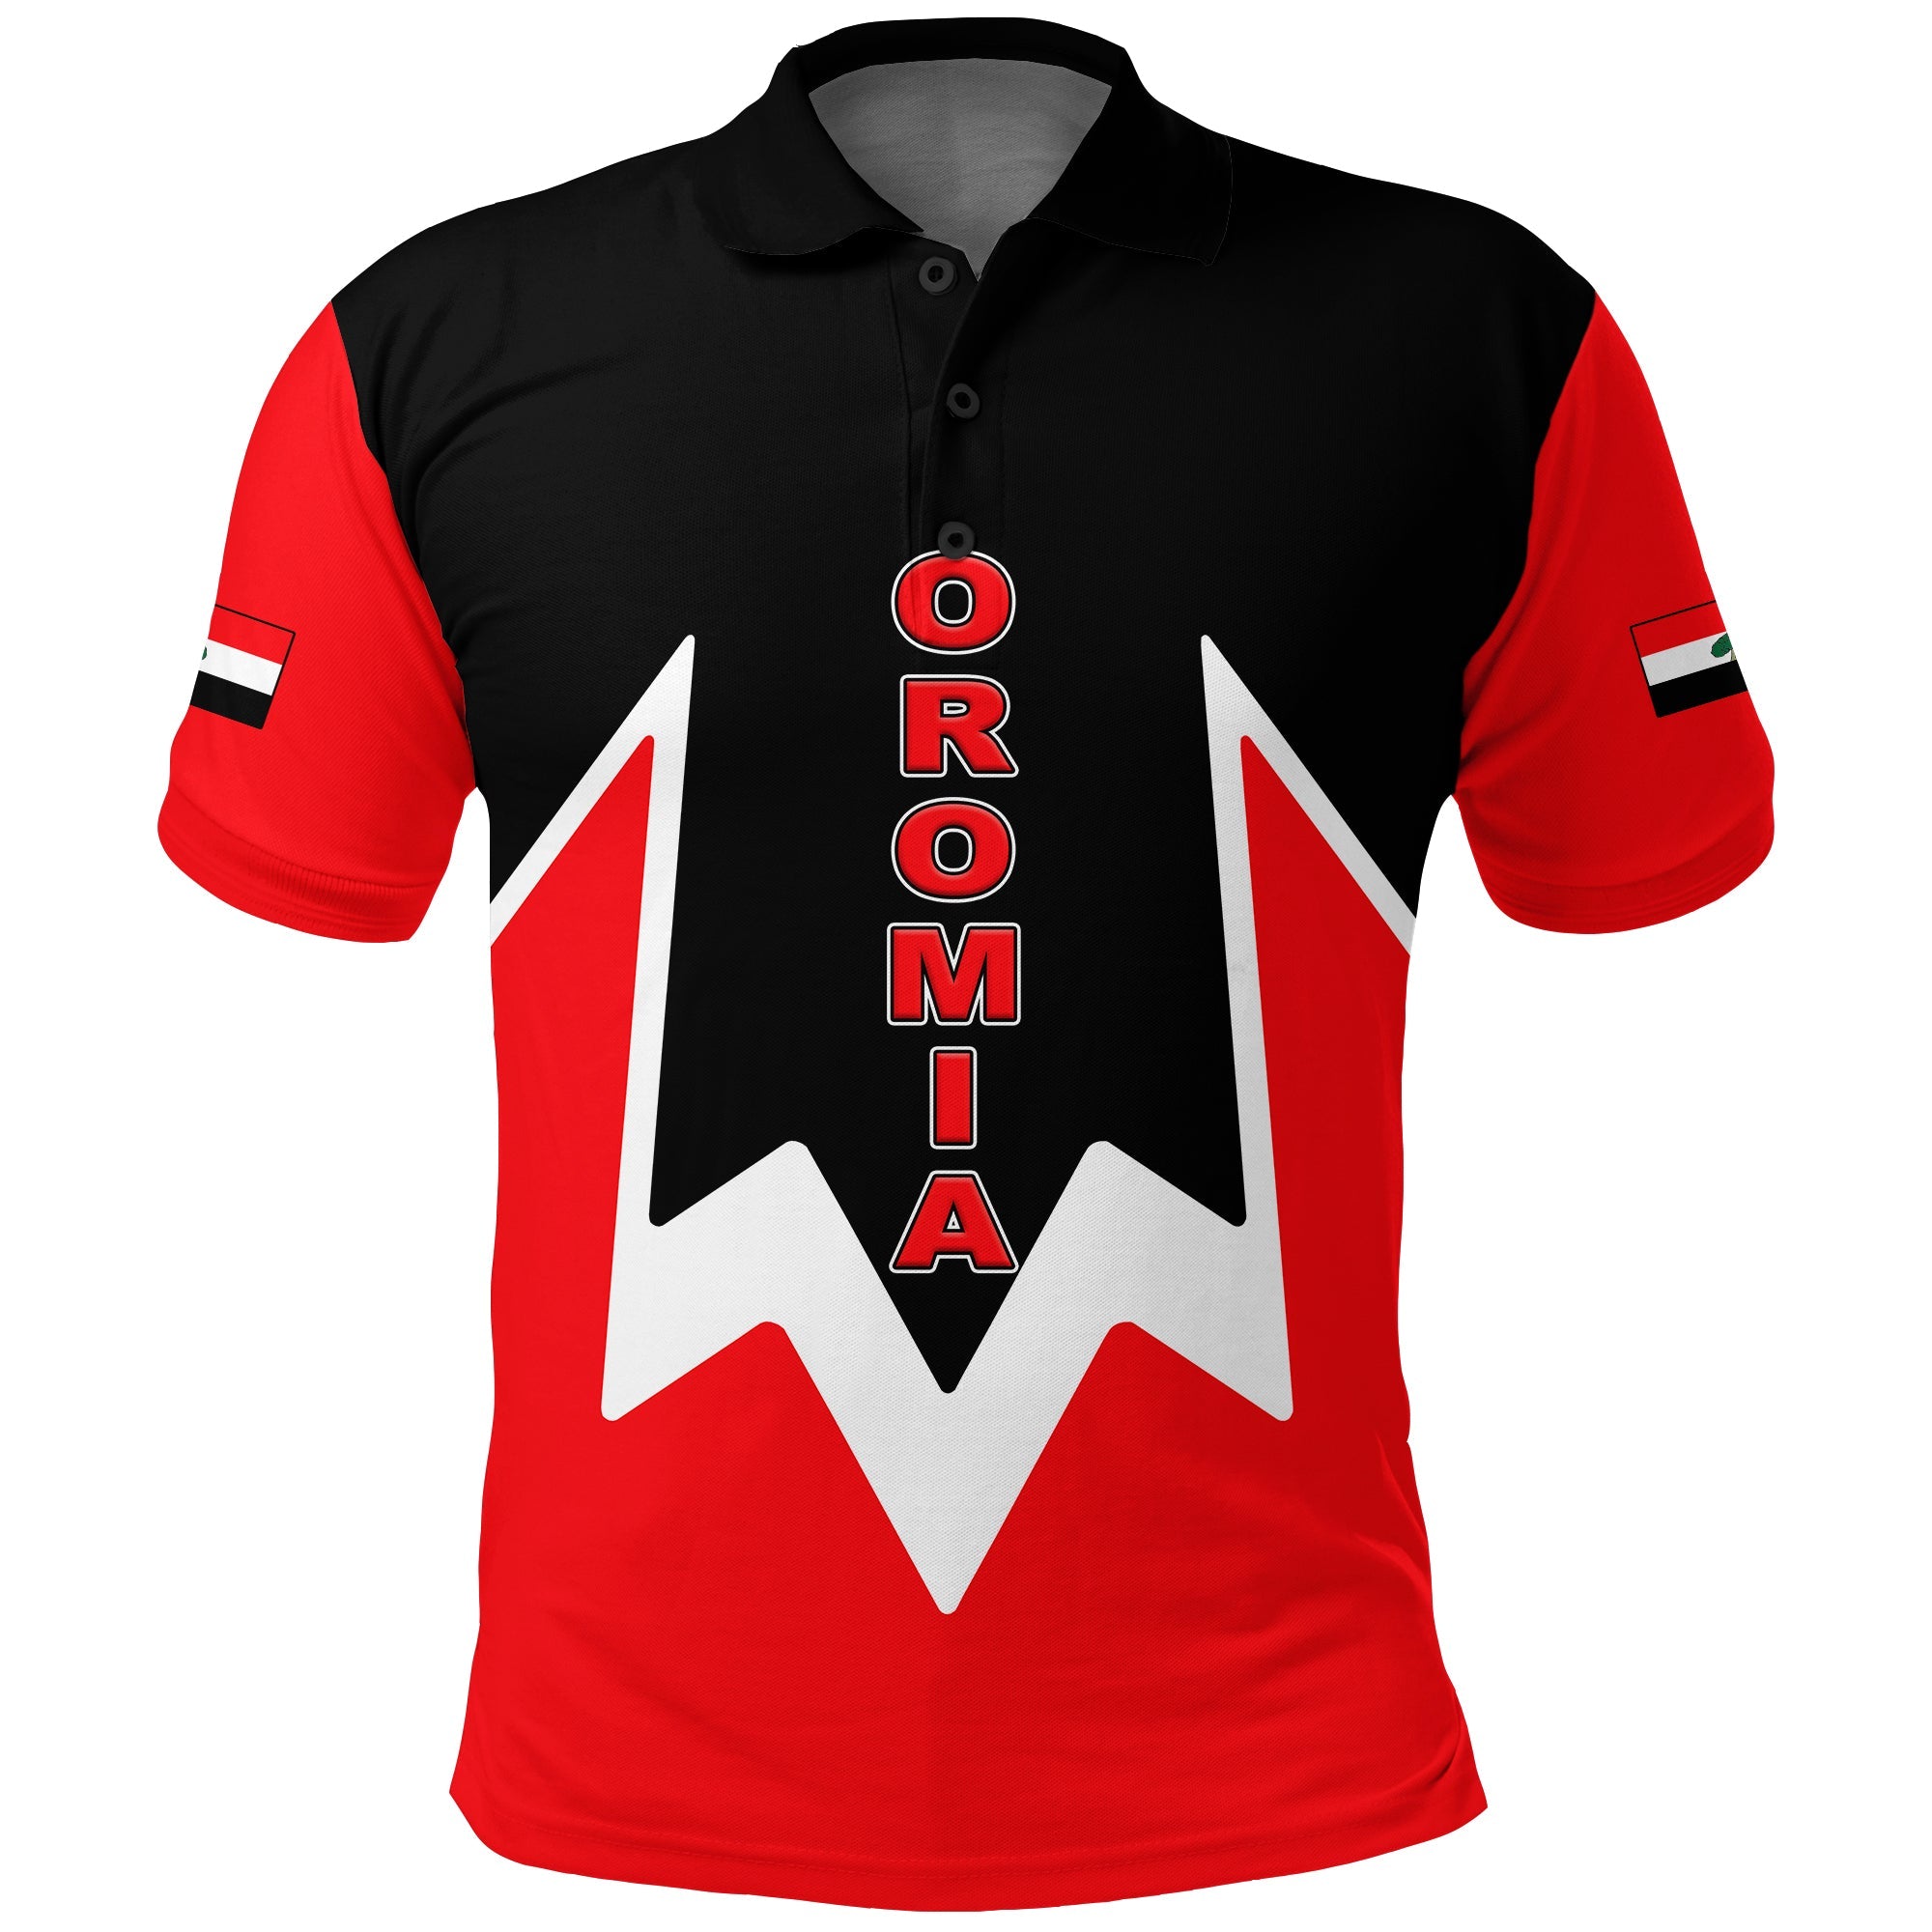 oromia-region-legend-ethiopia-polo-shirt